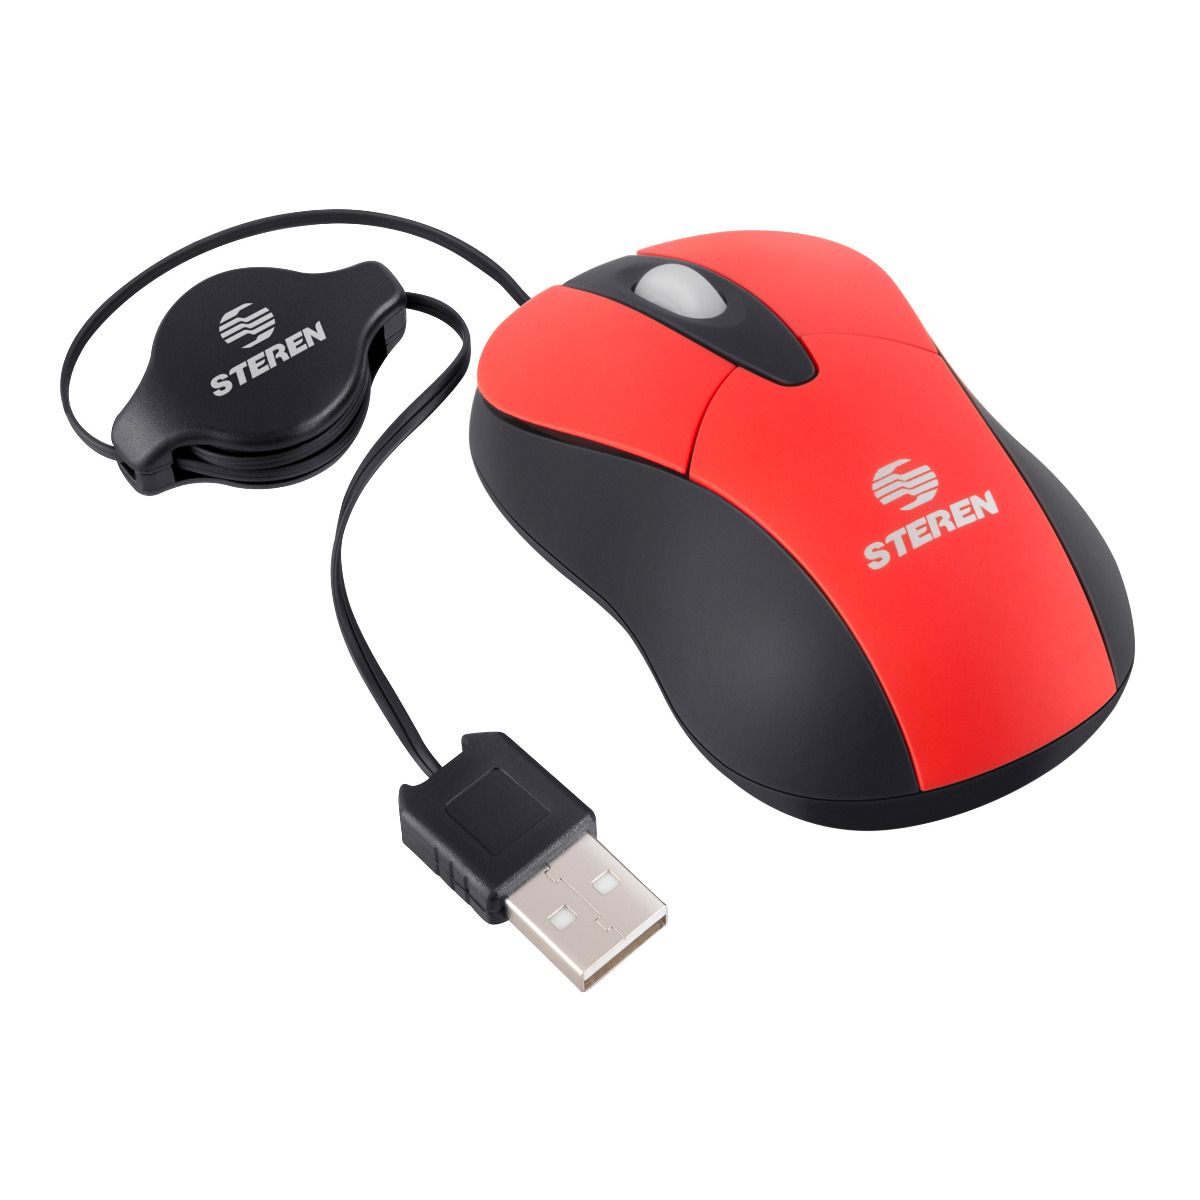 Ratón para juegos con cable, ratón con cable Ratón USB de 3